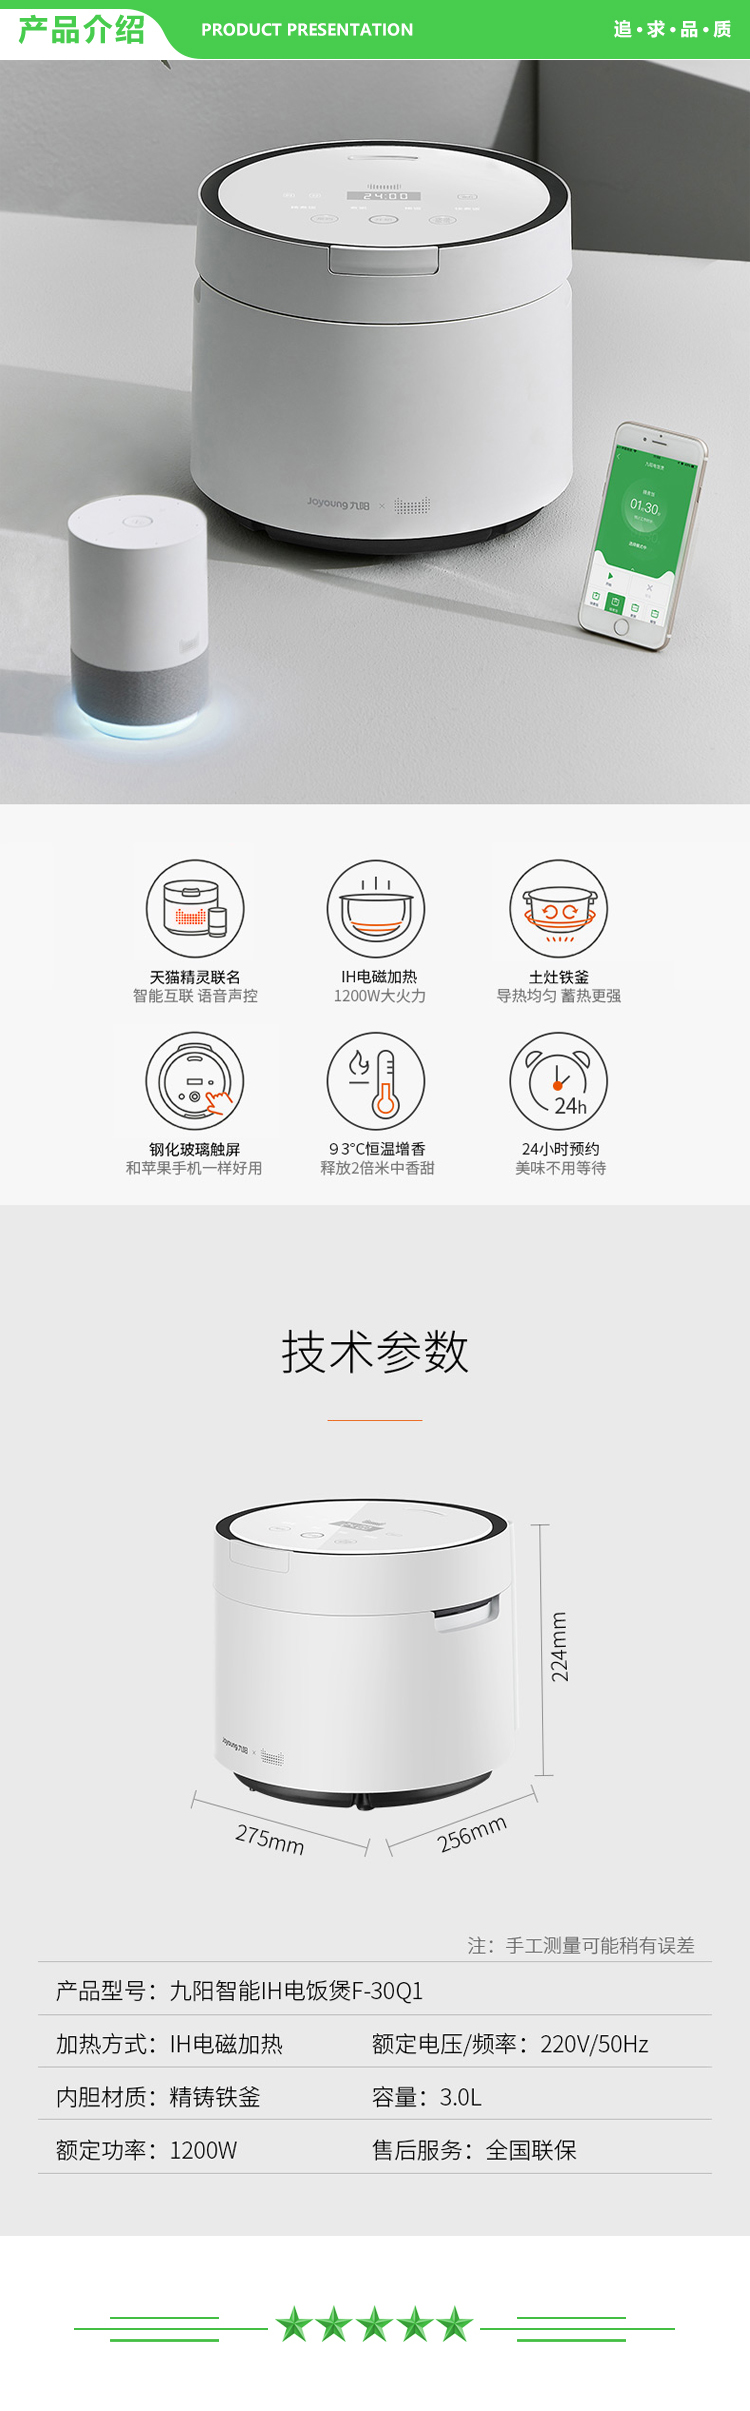 九阳 Joyoung F-30Q1 电饭煲多功能家用电饭锅智能预约定时智能菜单 白色 2.jpg